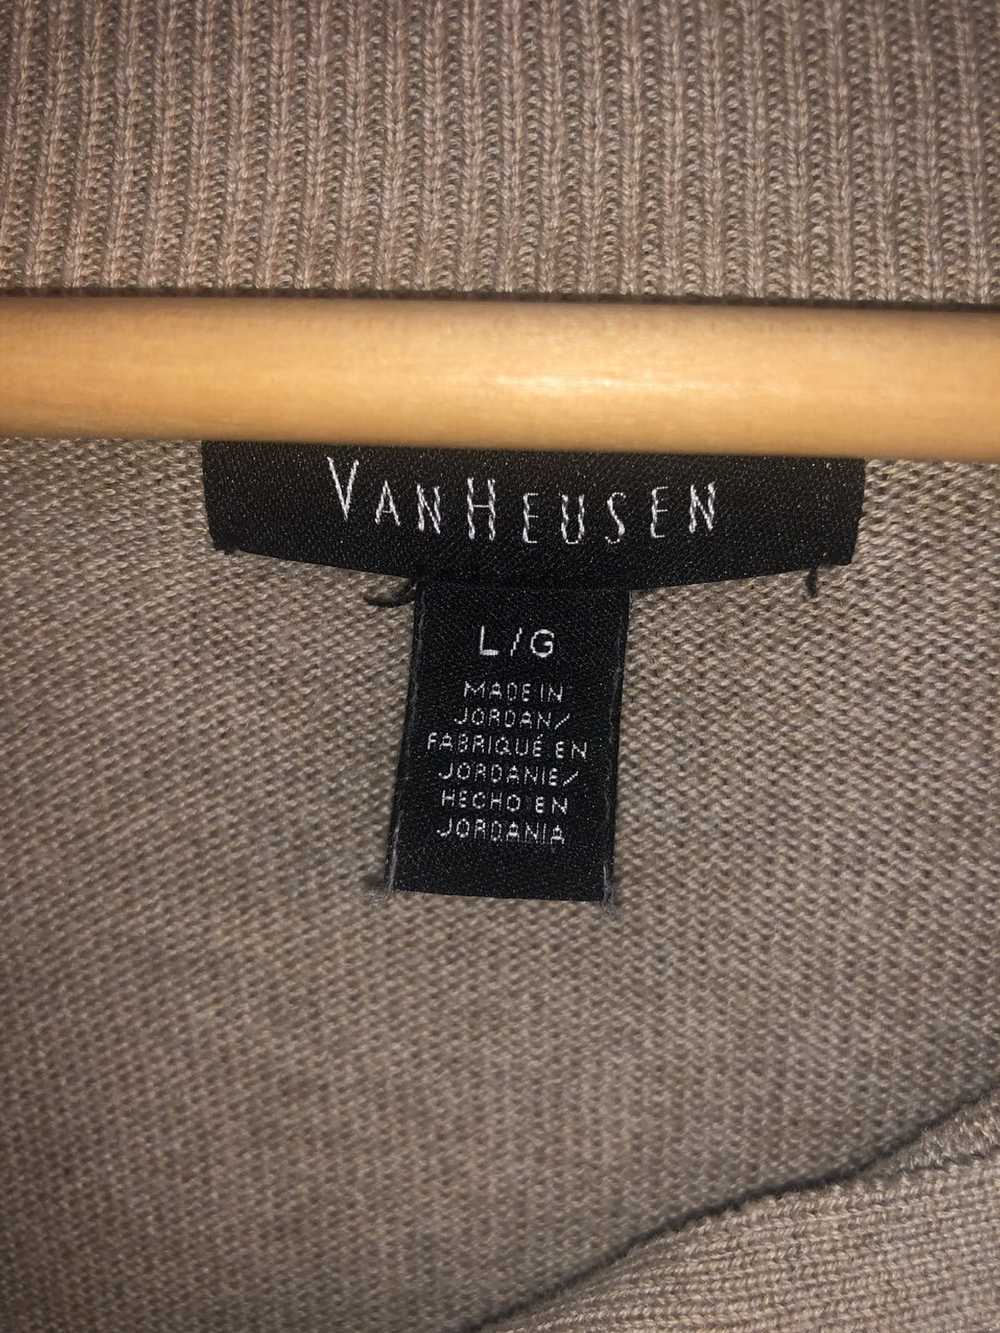 Van Heusen Van Heusen Light Brown Sweater - image 5